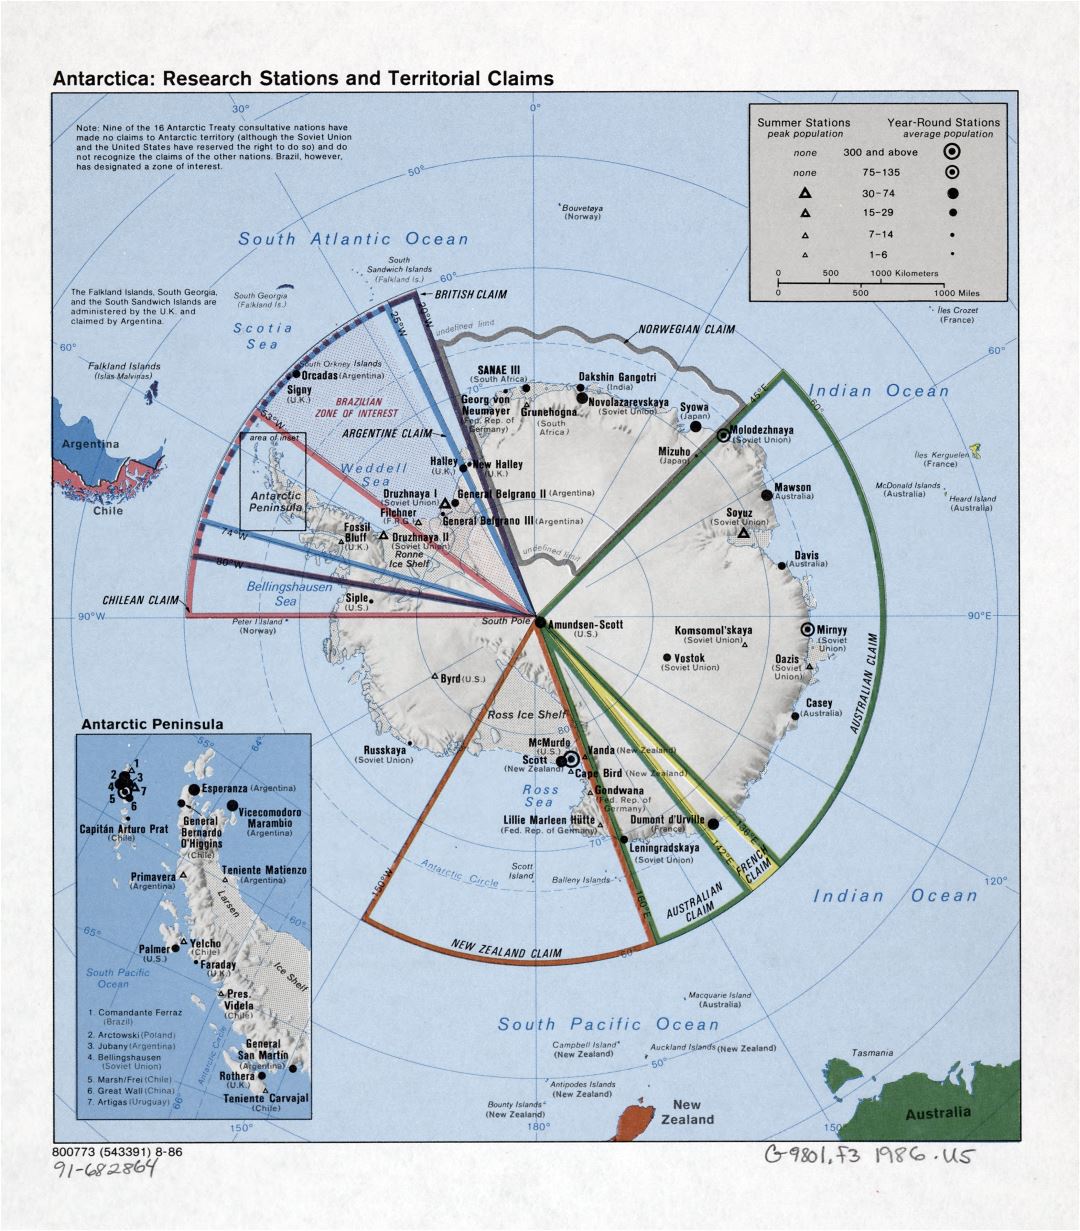 Gran mapa detallado de las estaciones de investigación de la Antártida y reivindicaciones territoriales - 1986